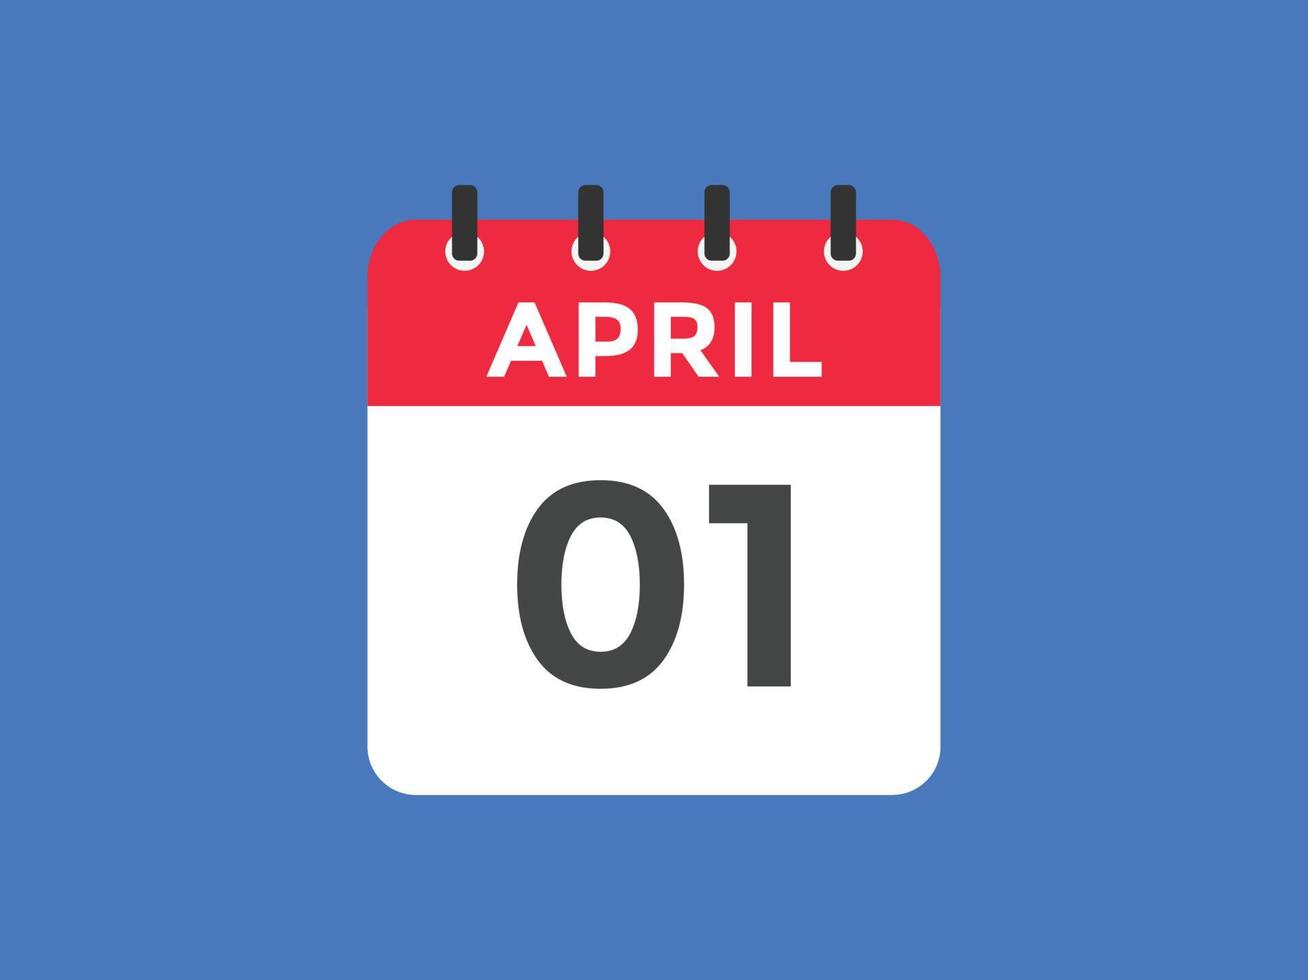 april 1 calendar reminder. 1st april daily calendar icon template. Calendar 1st april icon Design template. Vector illustration